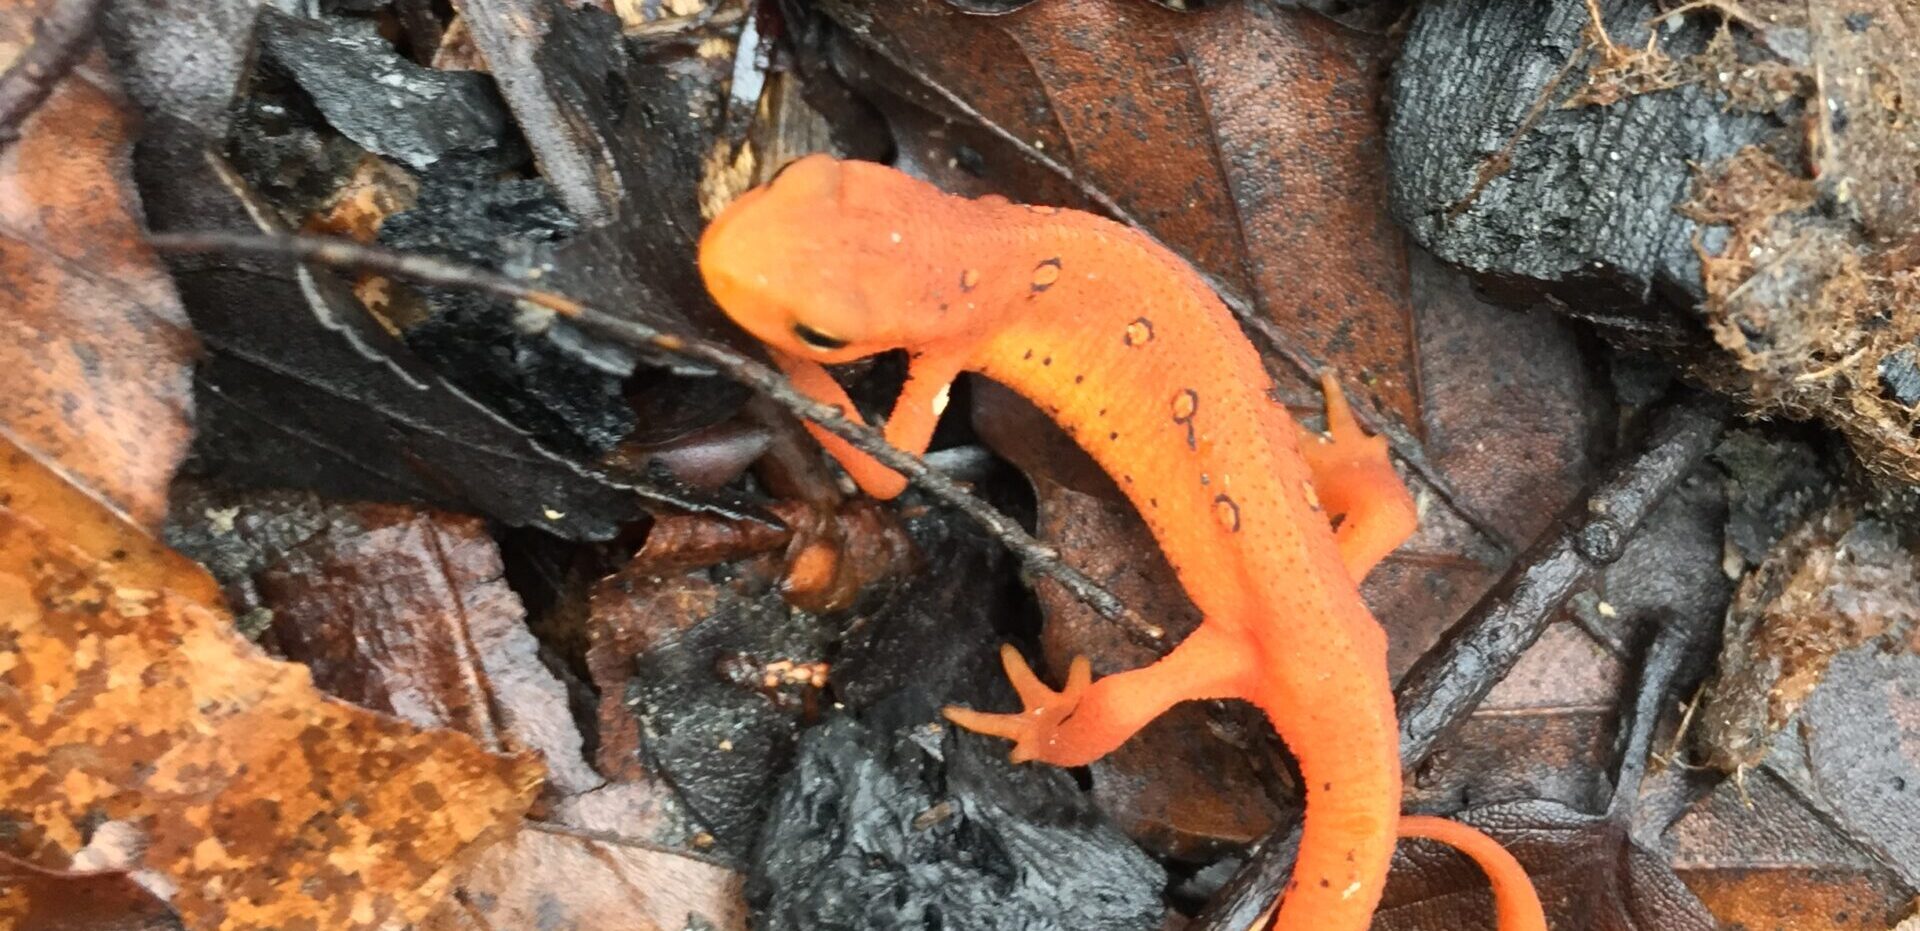 Red eft, young salamander, at Royalston Falls